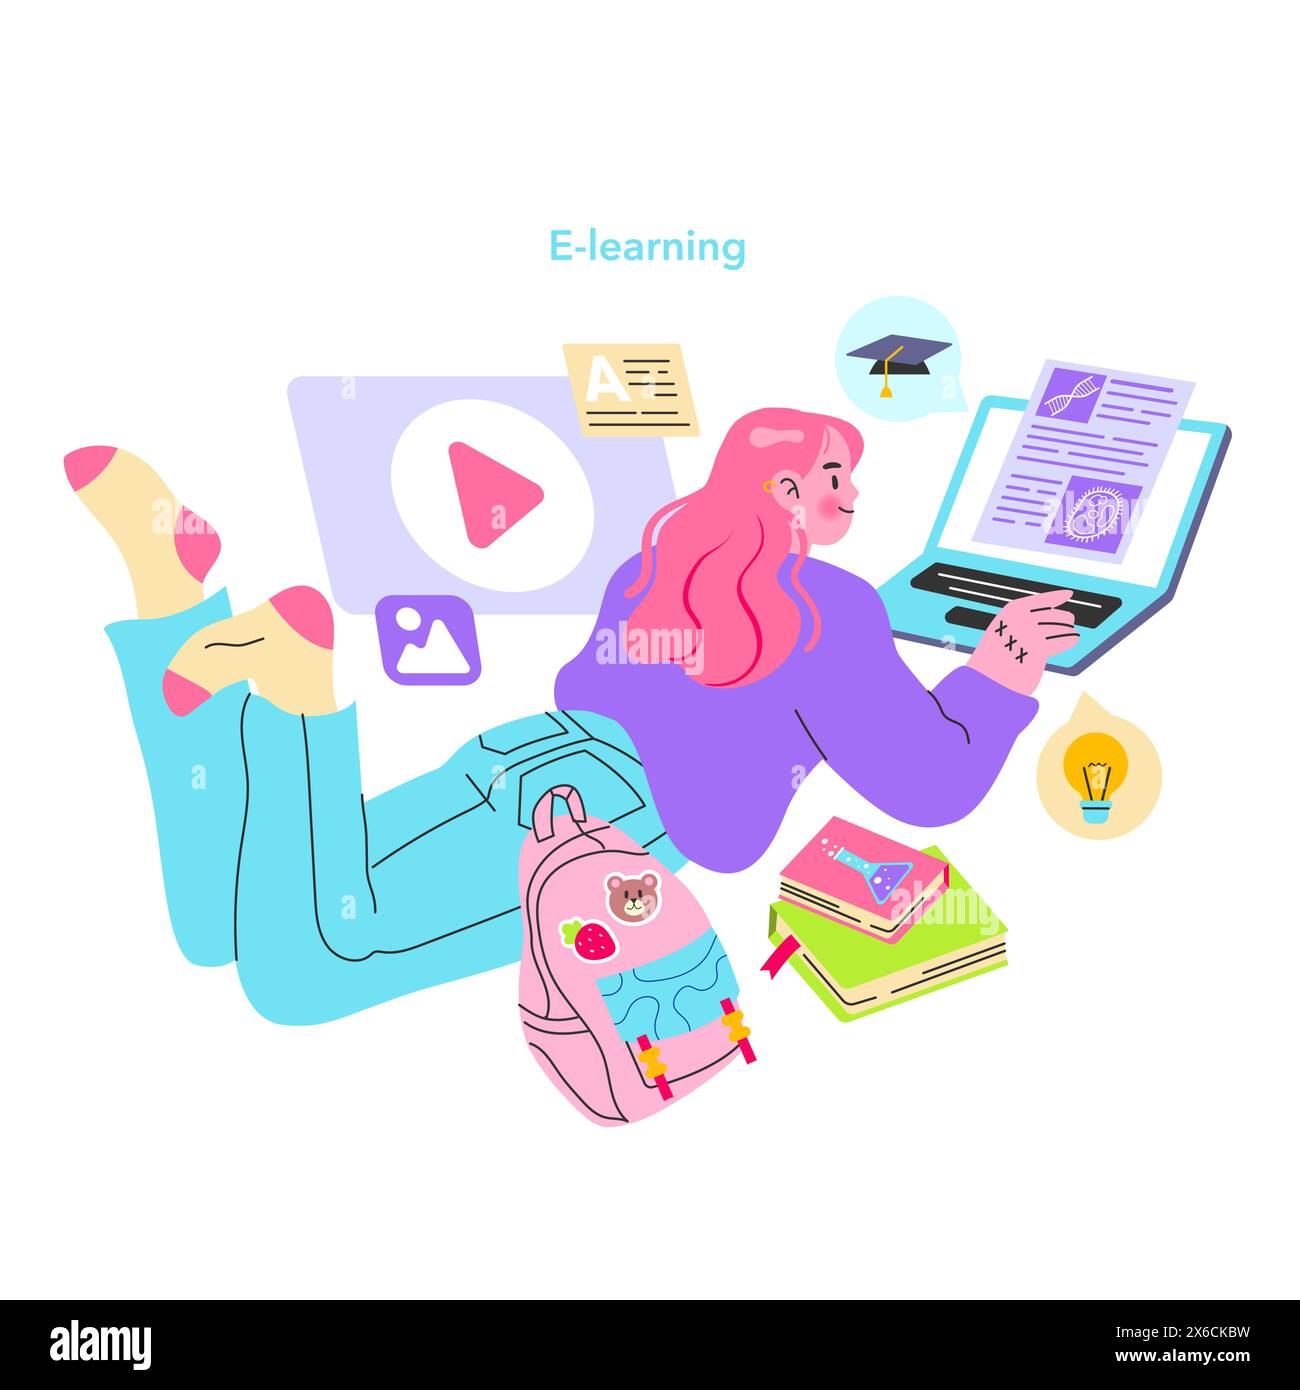 Concetto di nativi digitali. Giovane donna impegnata nella formazione online con varie icone di e-learning e una giocosa combinazione di colori. Illustrazione di un ambiente di apprendimento confortevole. Illustrazione vettoriale. Illustrazione Vettoriale